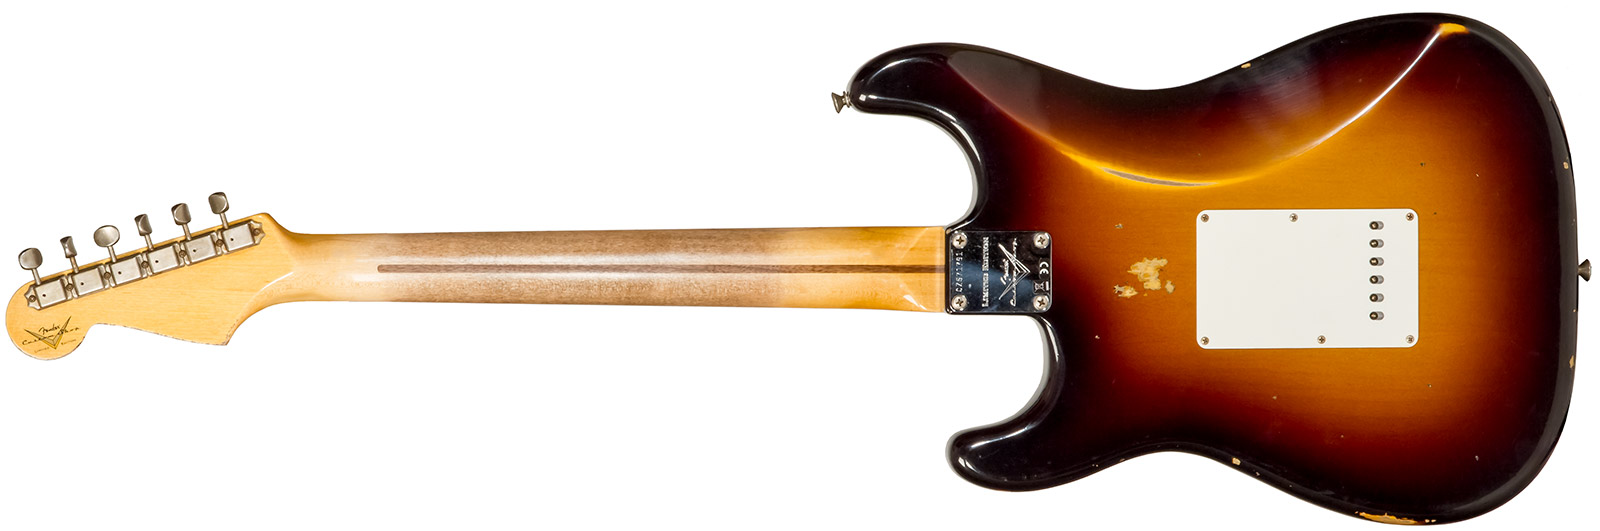 Fender Custom Shop Strat 1957 3s Trem Mn #cz571791 - Relic Wide Fade 2-color Sunburst - Str shape electric guitar - Variation 1